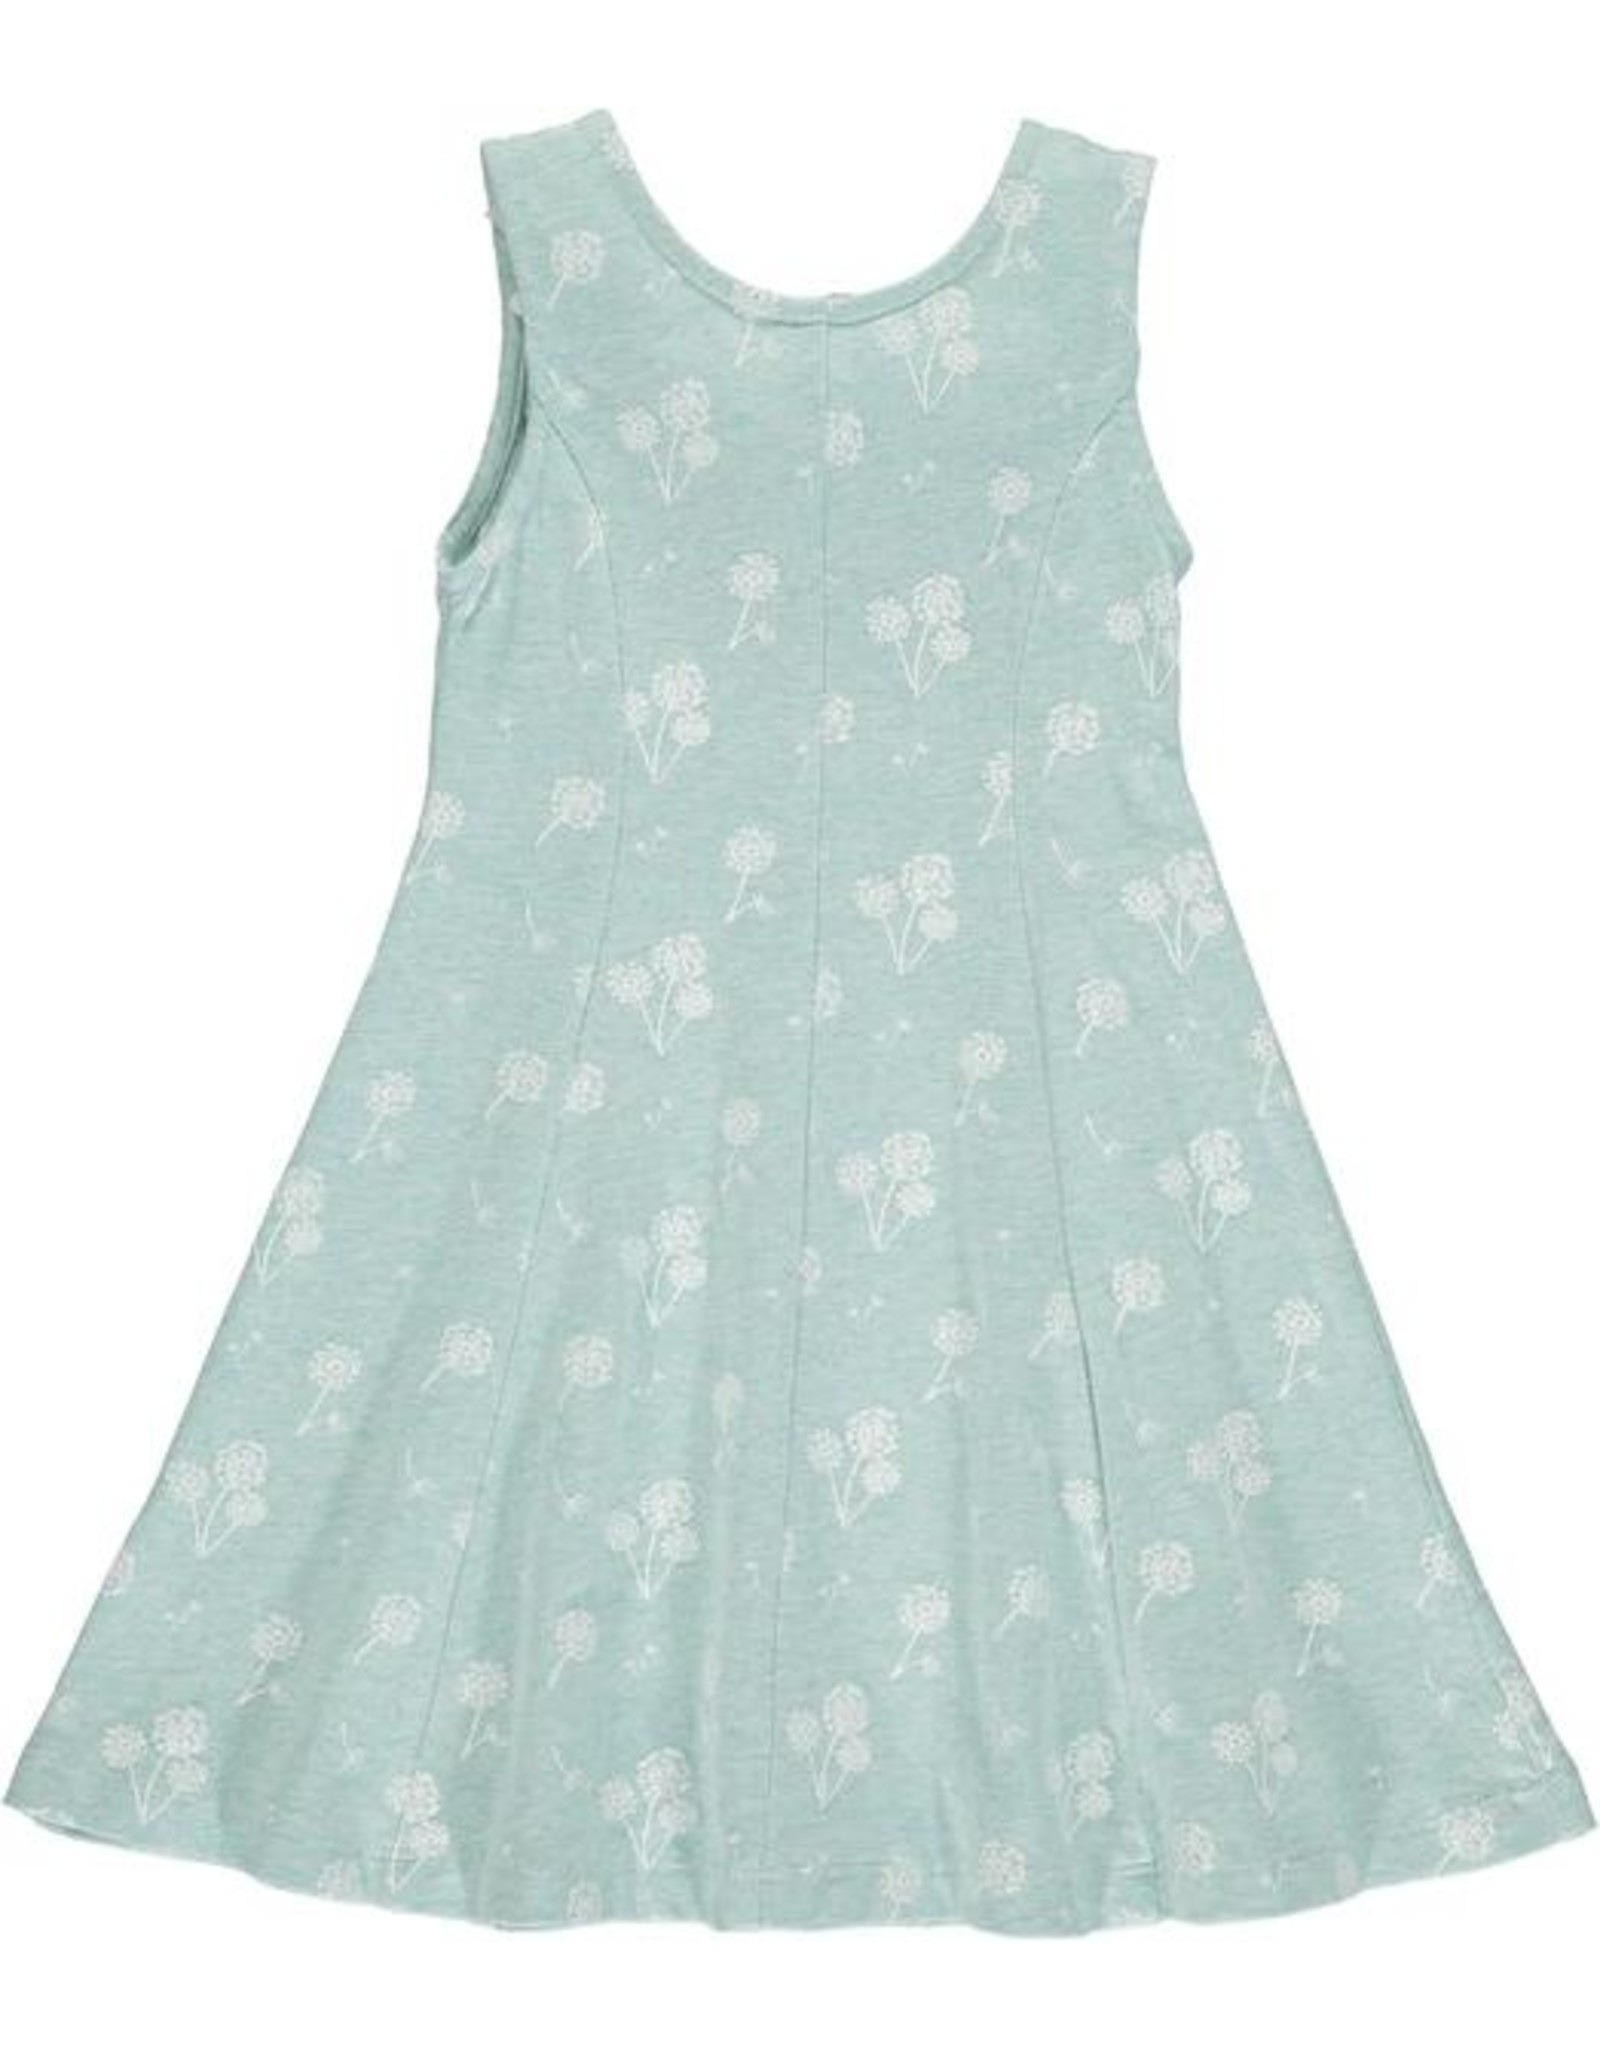 vignette Clememtine Dress - Aqua Dandelion